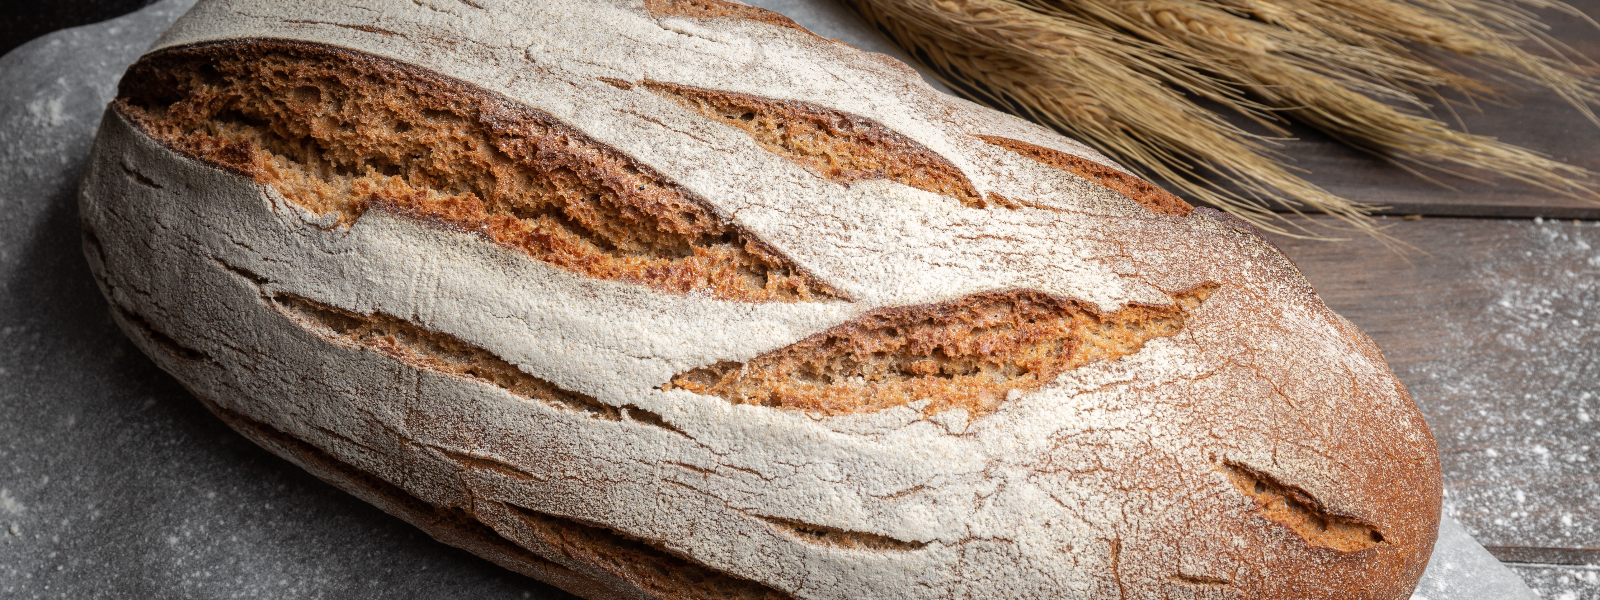 AIRUS OÜ - Sortimendis leidub üle 20 erineva leiva, sealhulgas klassikaline rukkitäisteraleib, mis järgib vanu retsept...